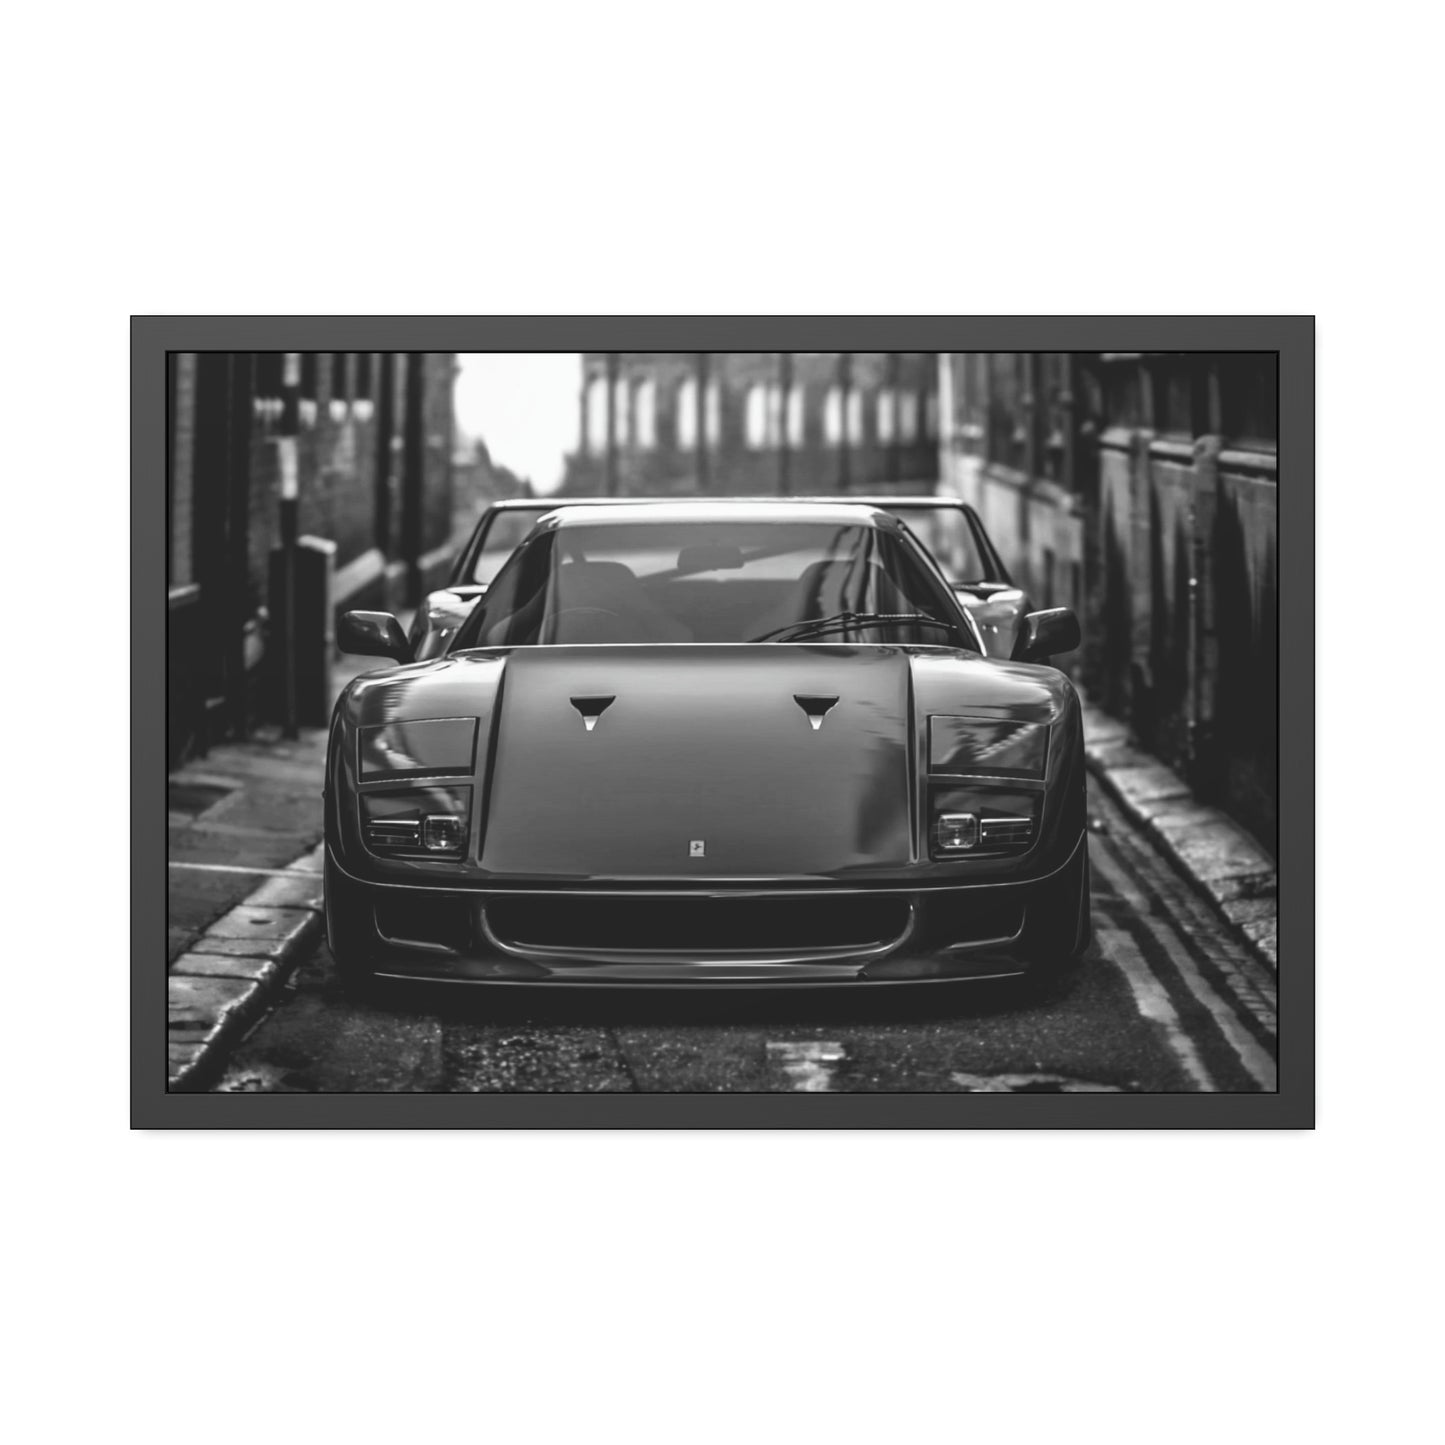 Ferrari B&W